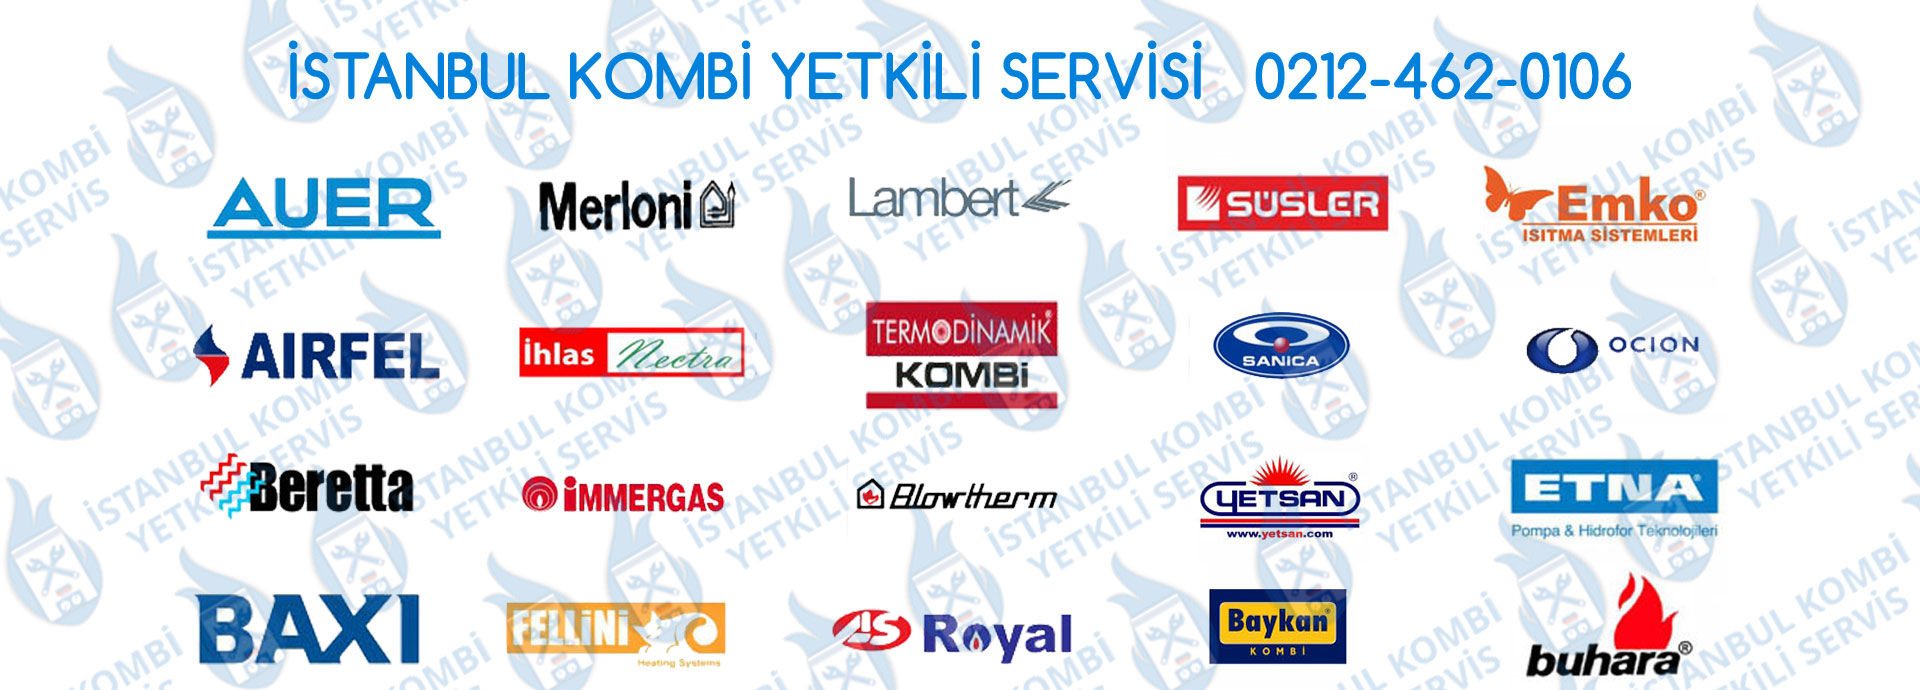 Hizmet Verdiğimiz Tüm Kombi Markaları | İstanbul Kombi Yetkili Servisi | Kombi Tamir | Kombi Servis